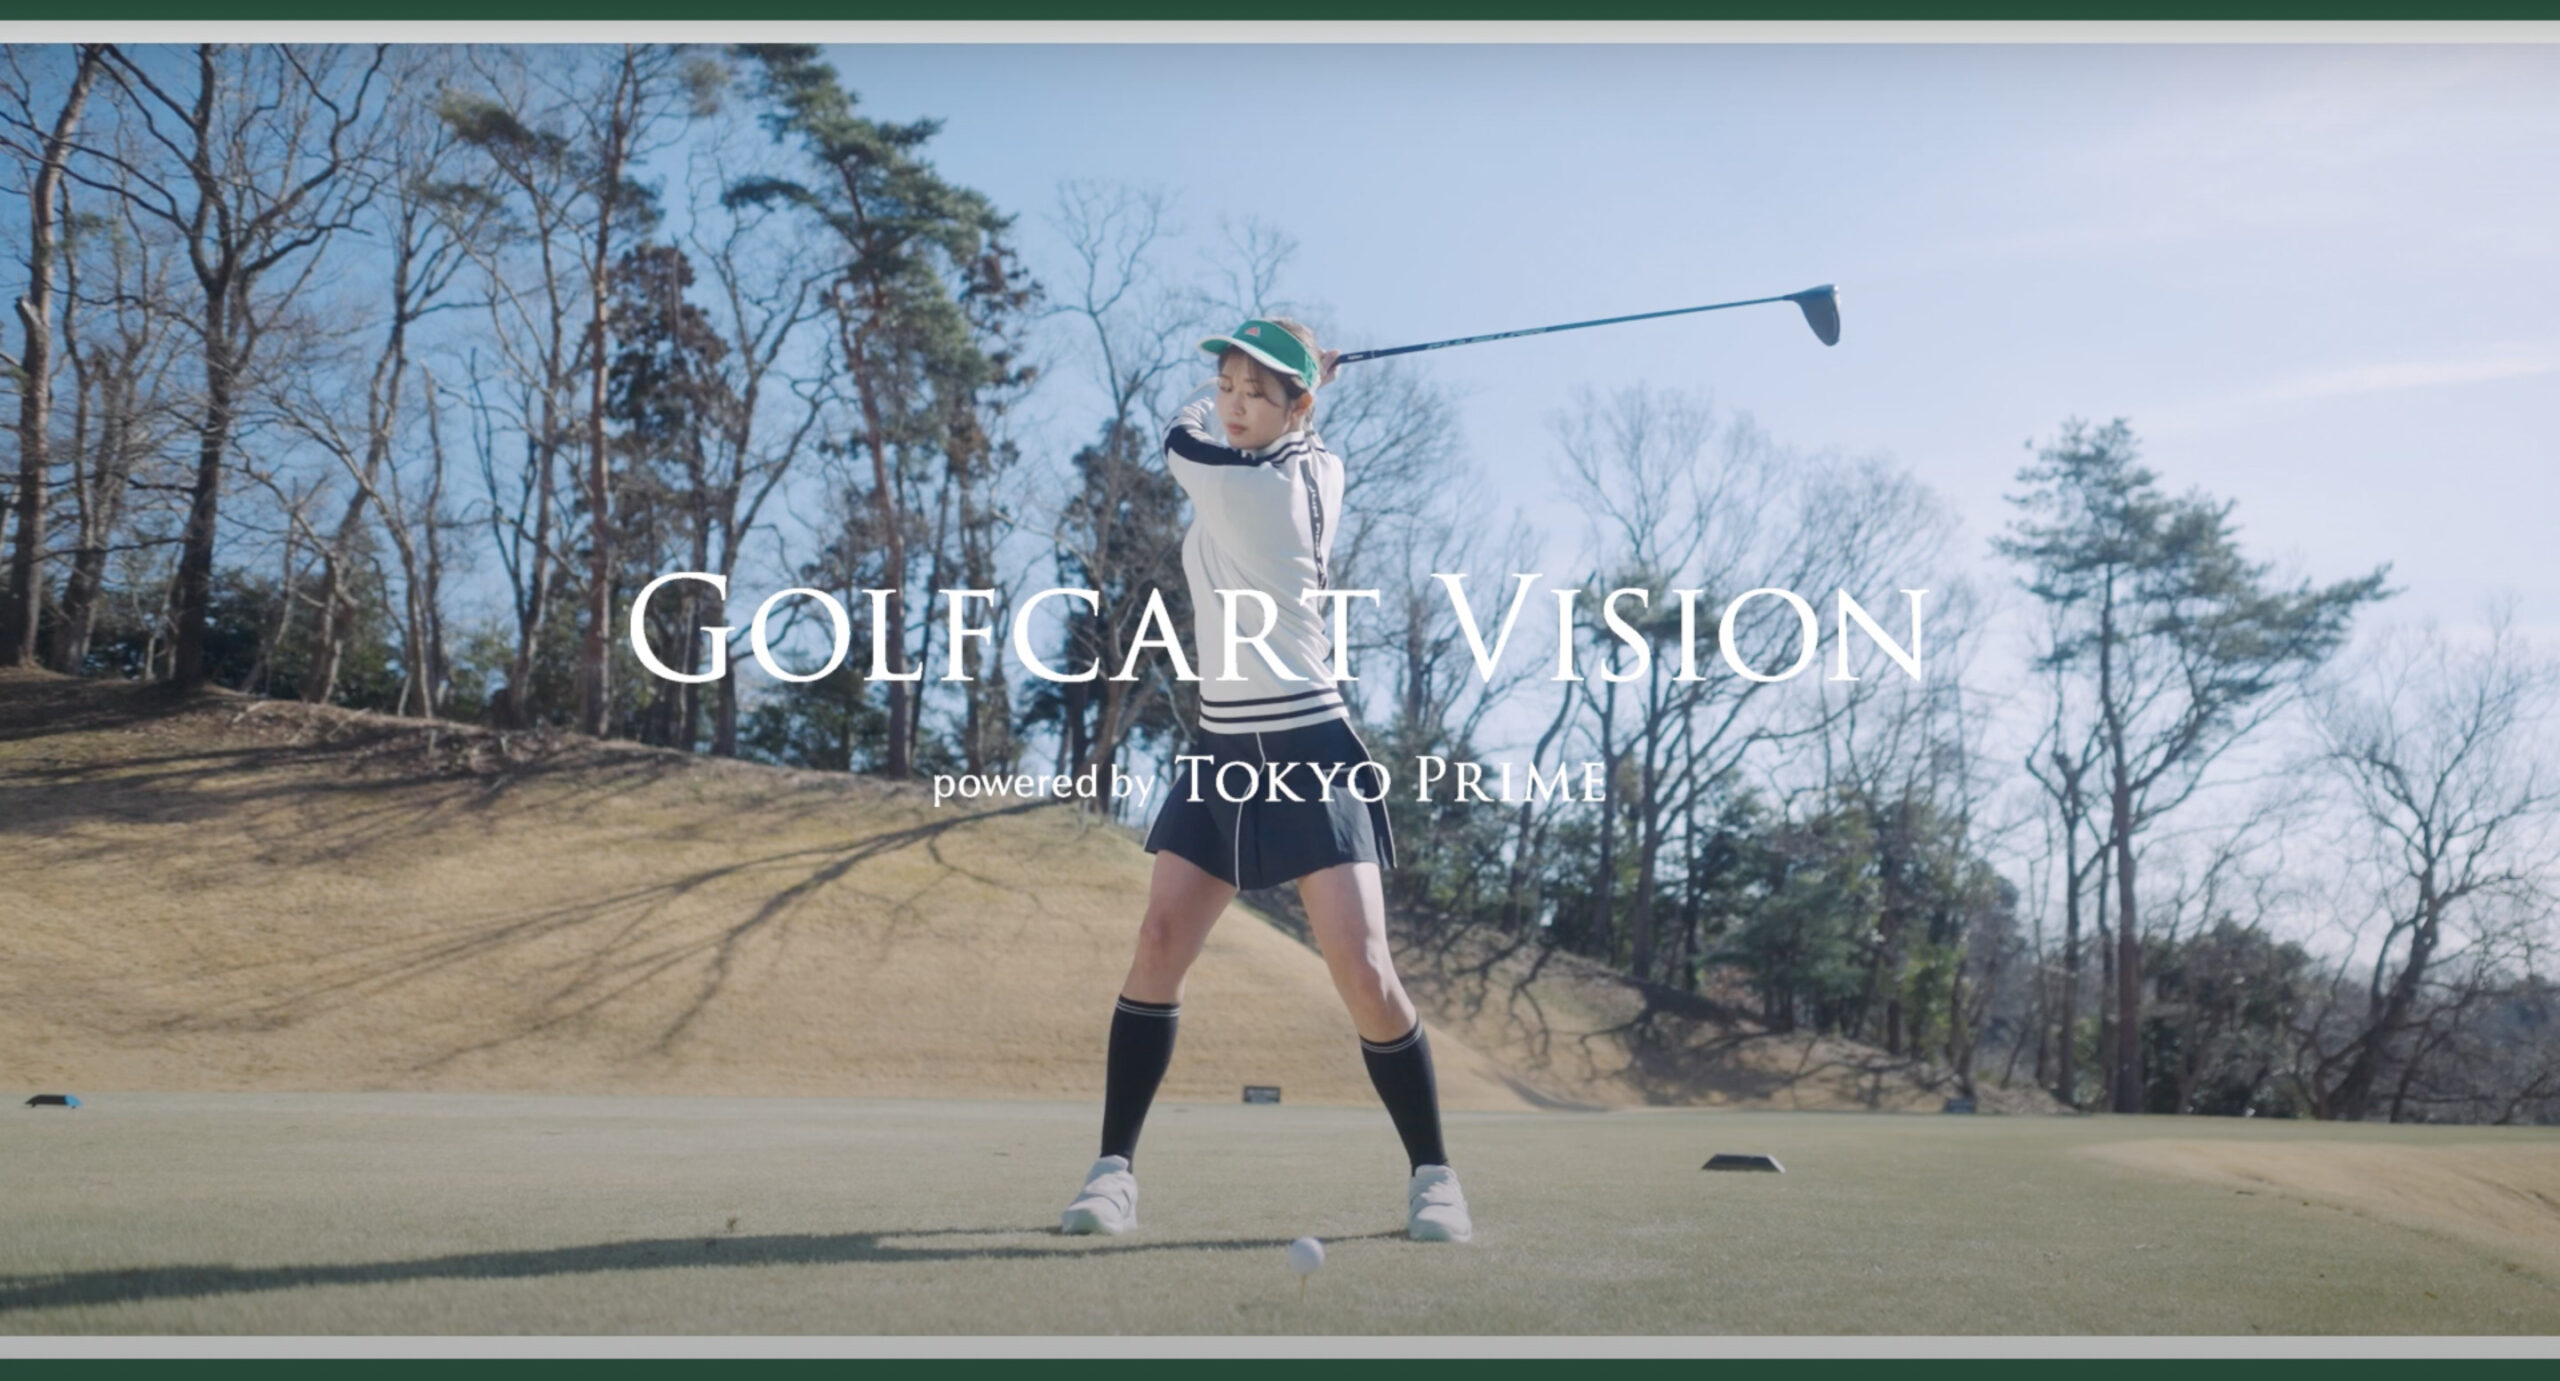 IRIS、急成長中のゴルフカートサイネージメディア「Golfcart Vision®︎」の自社CMを3月13日より放映開始！〜ゴルフカートでの移動体験の価値向上を目指す～